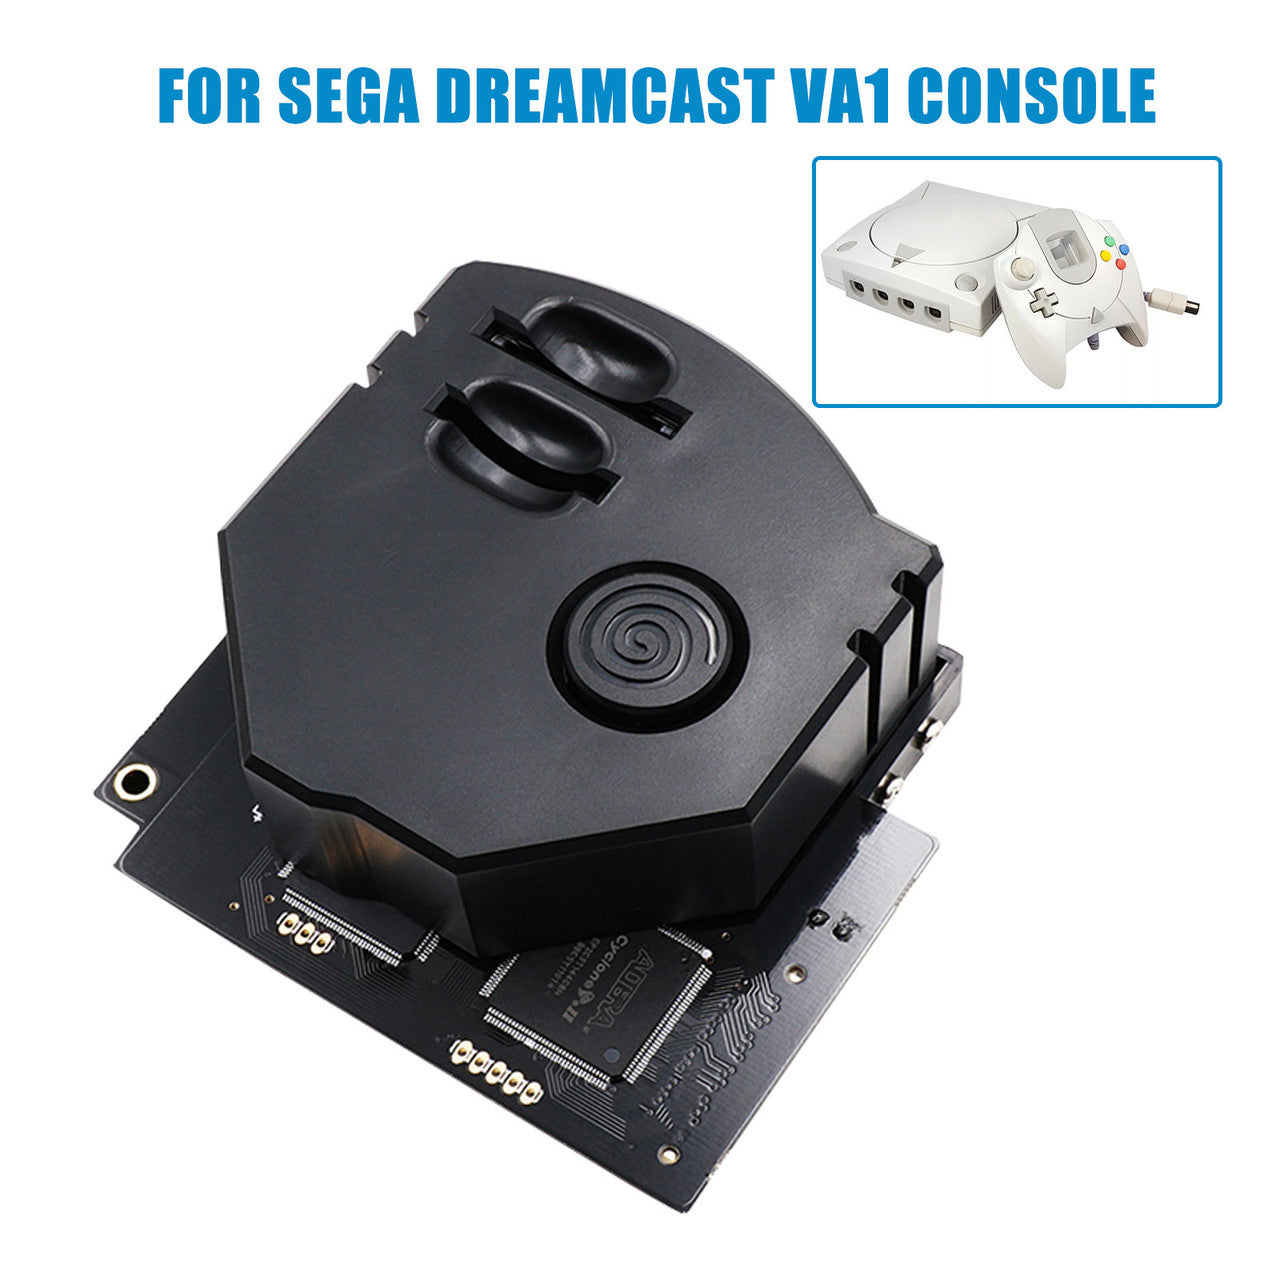 Remote Secure Digital Card 3D Printed Mount Kit for Sega Dreamcast Console, Black